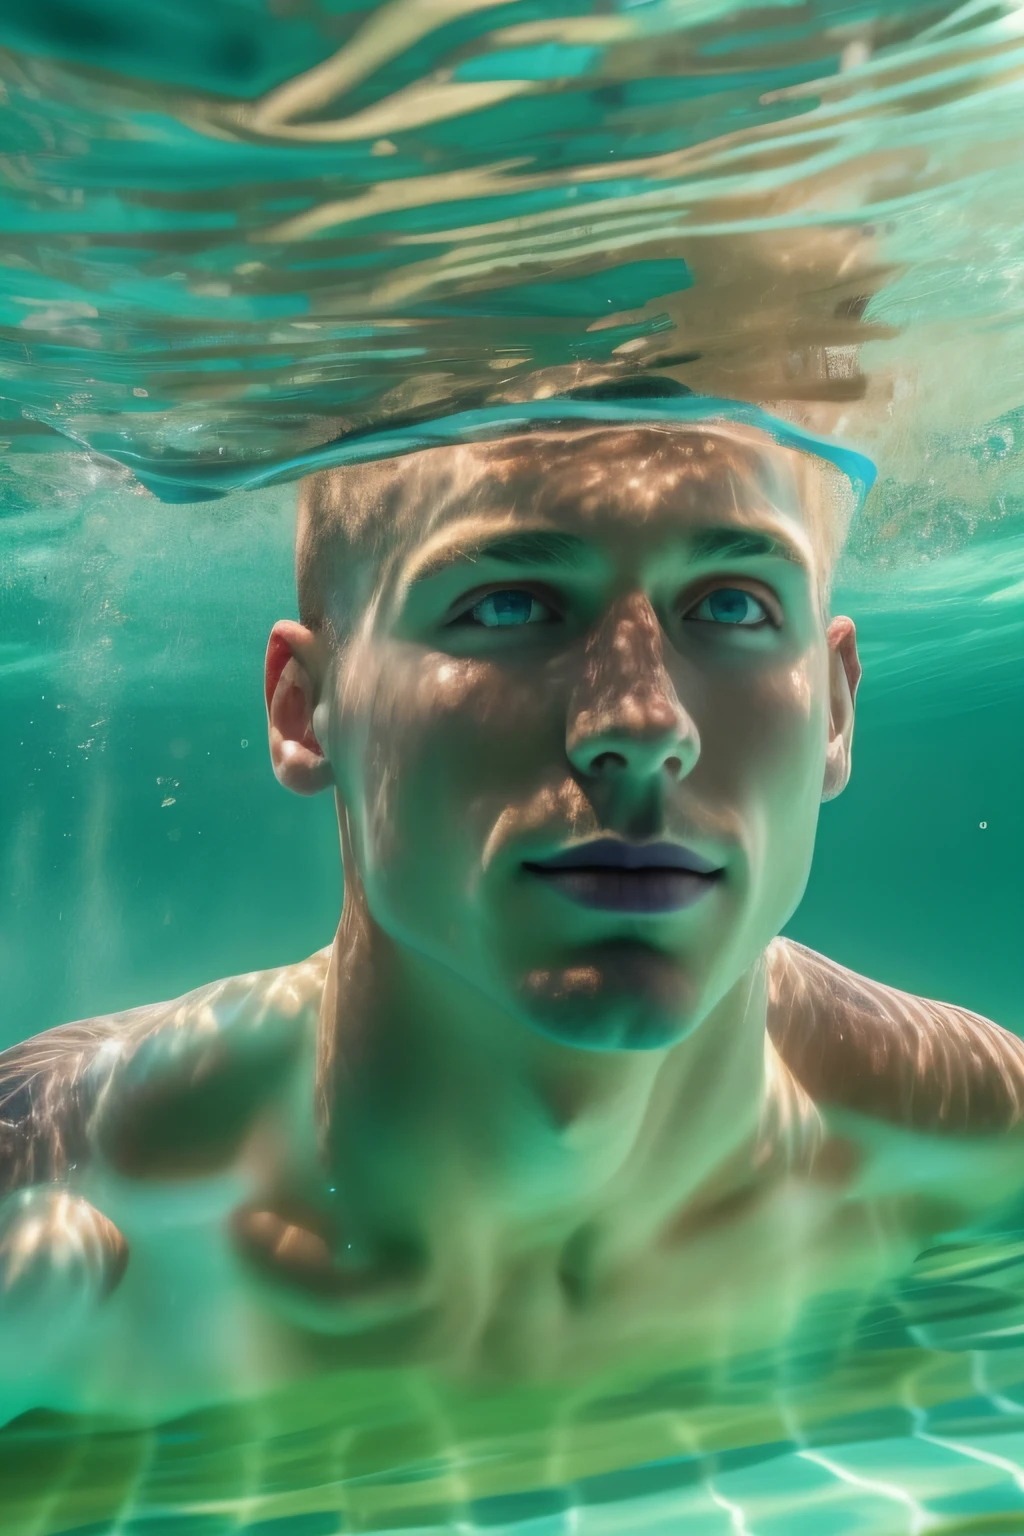 رجل وسيم و عاري و مفتول العضلات, بشعر أشقر قصير, السباحة بقوة تحت الماء في بركة مذهلة, ينظر من الأسفل